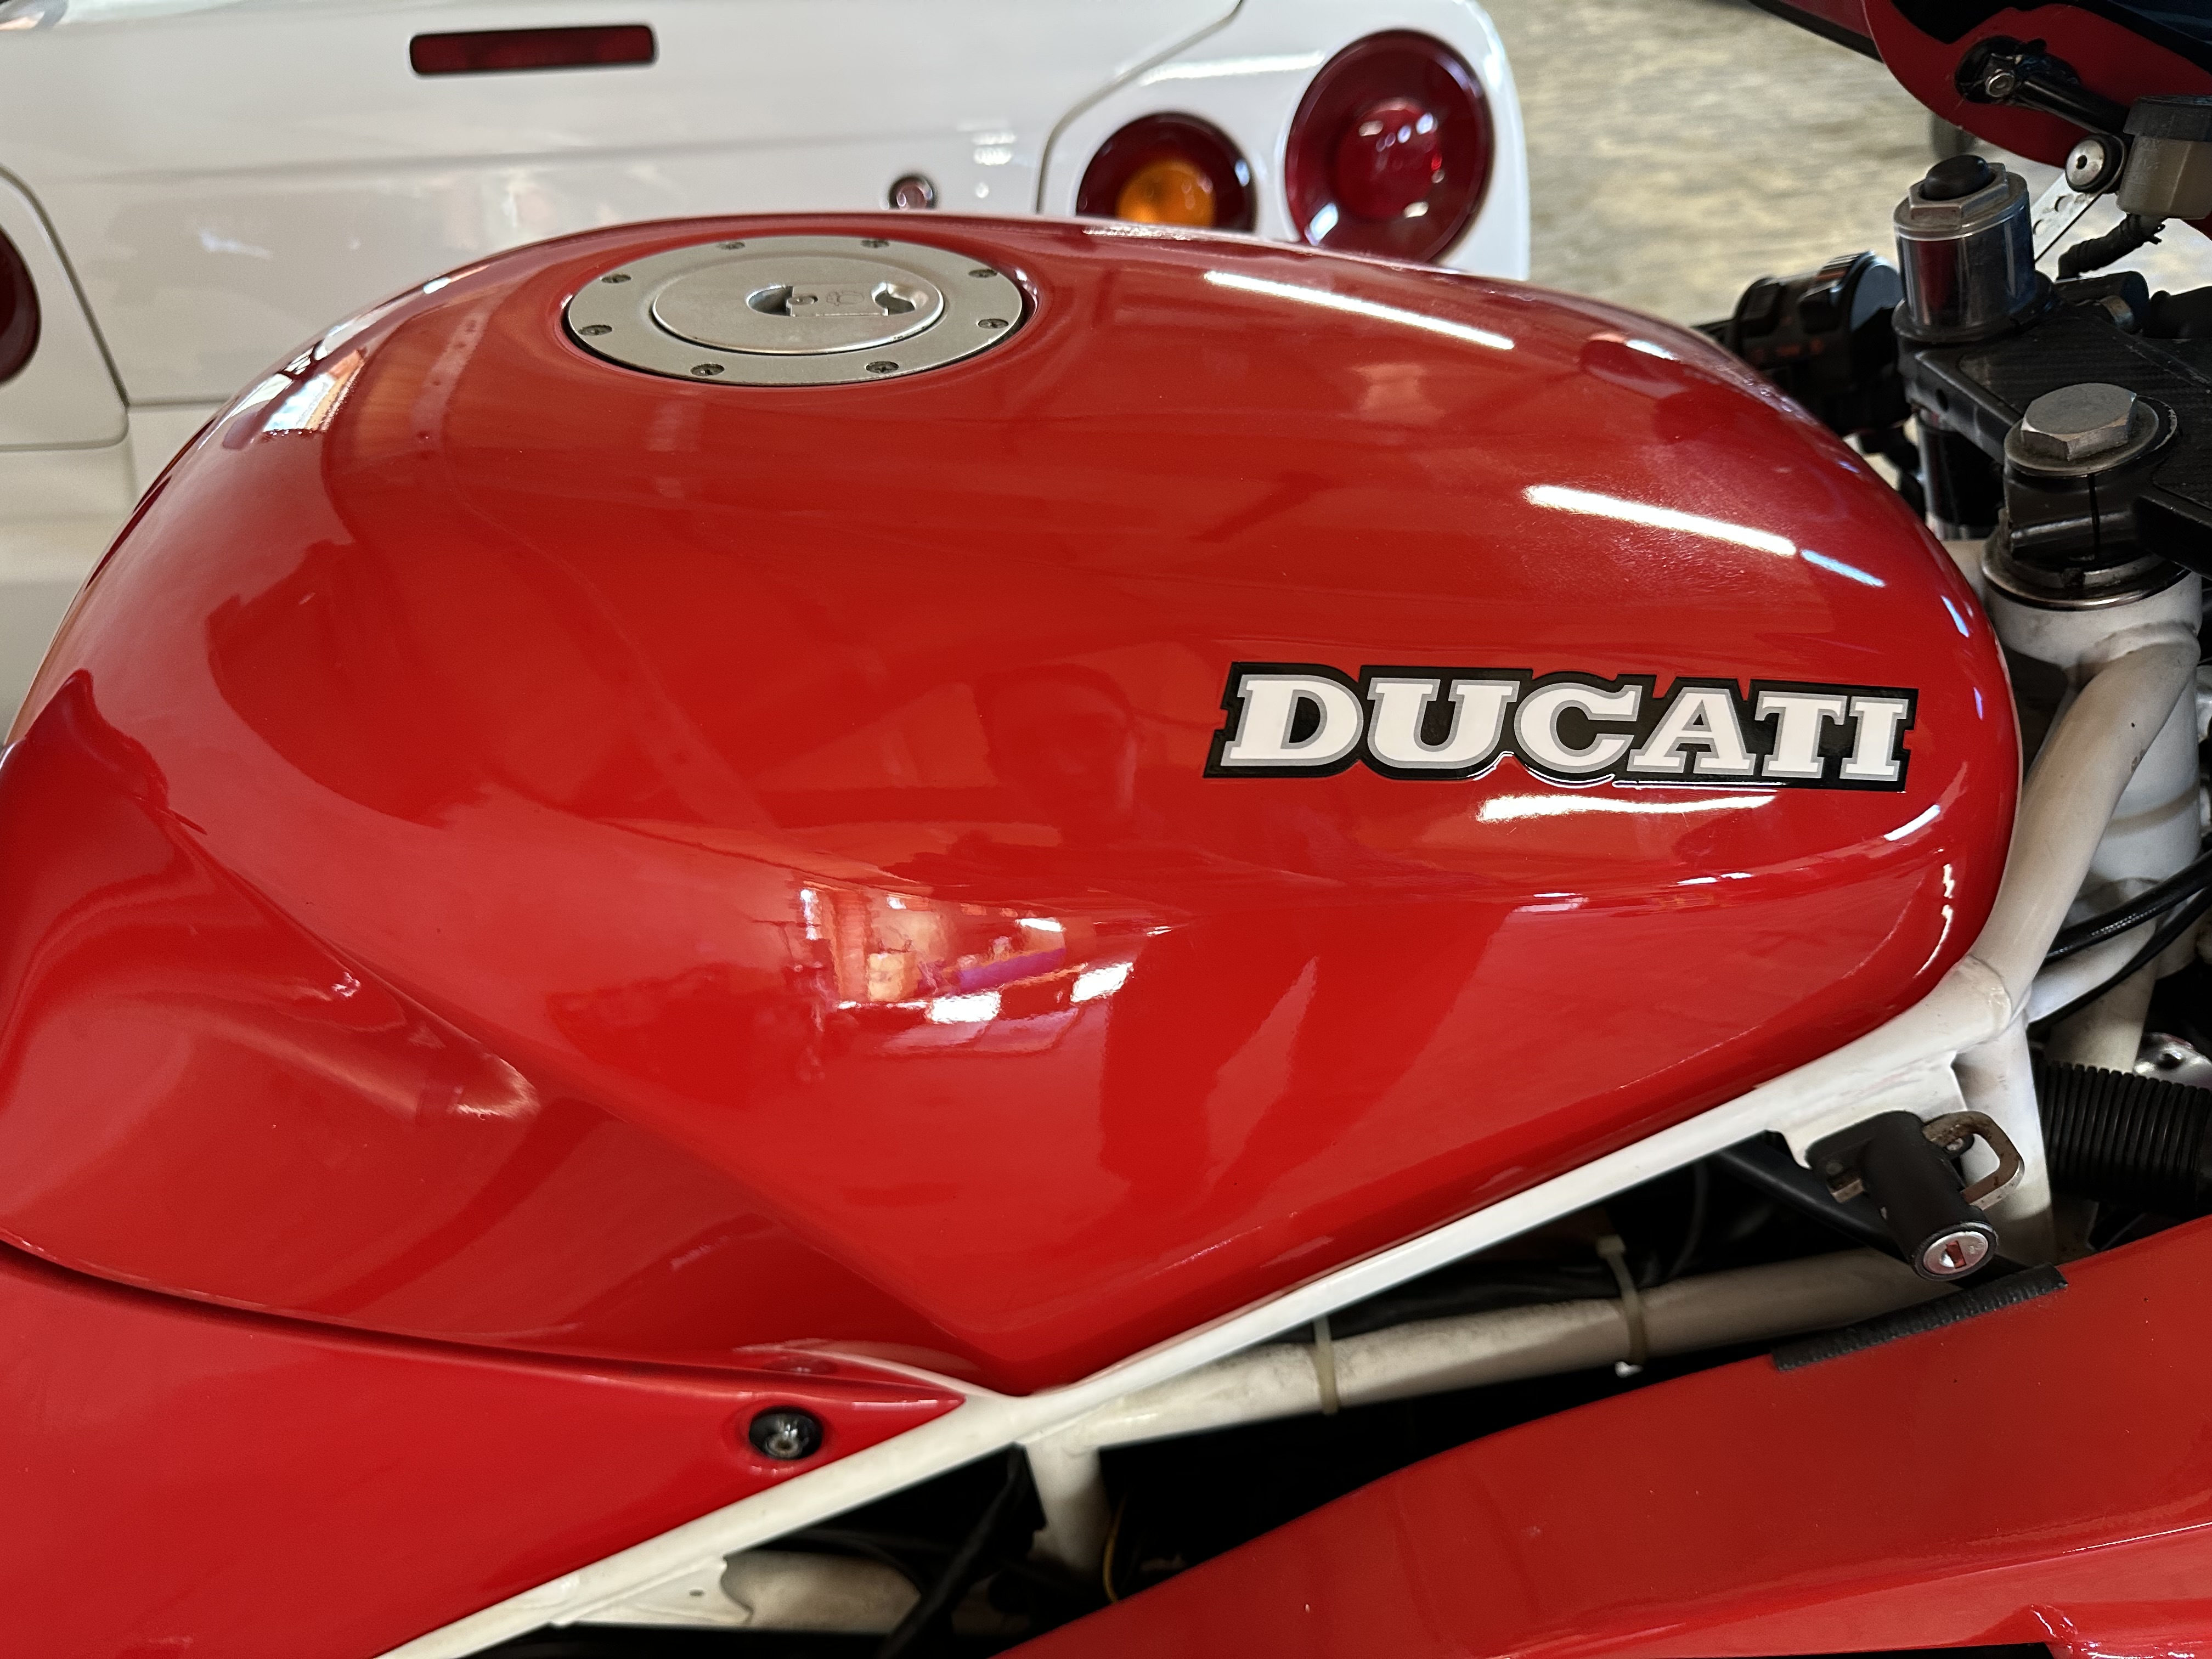 1990 Ducati 851 SP Reg. no. G996 GSX Frame no. 000412 Engine no. 000391 - Image 3 of 12